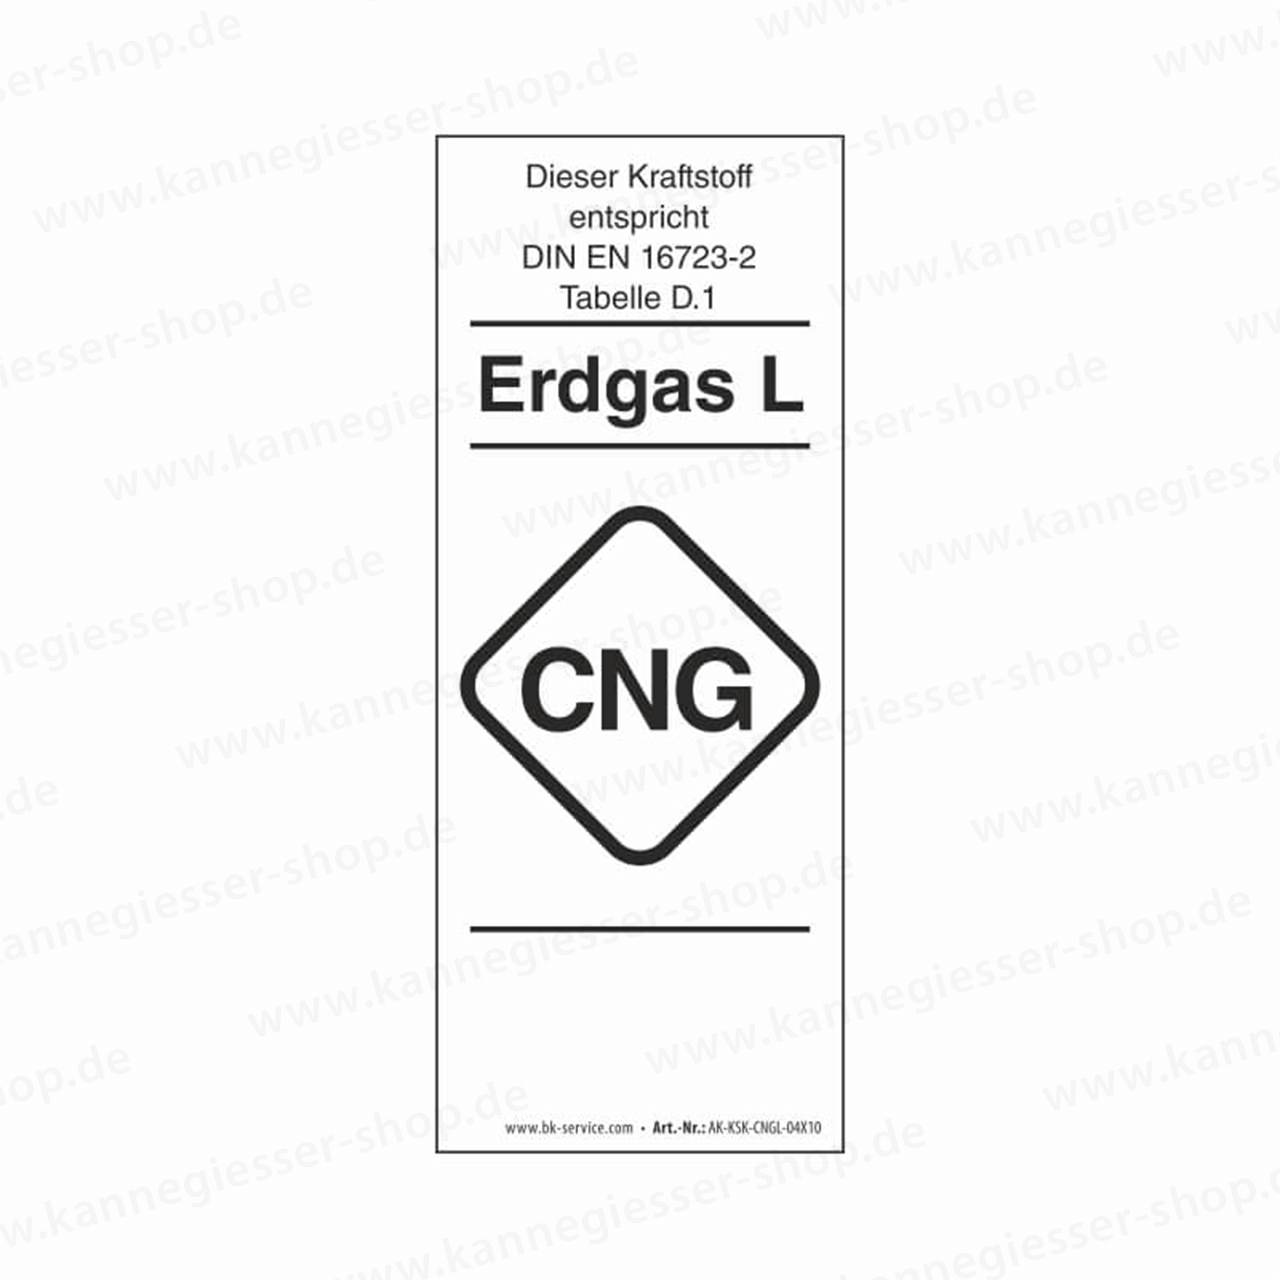 Aufkleber - Kraftstoffkennzeichnung CNG Erdgas Gruppe L (DIN EN 16723-2)